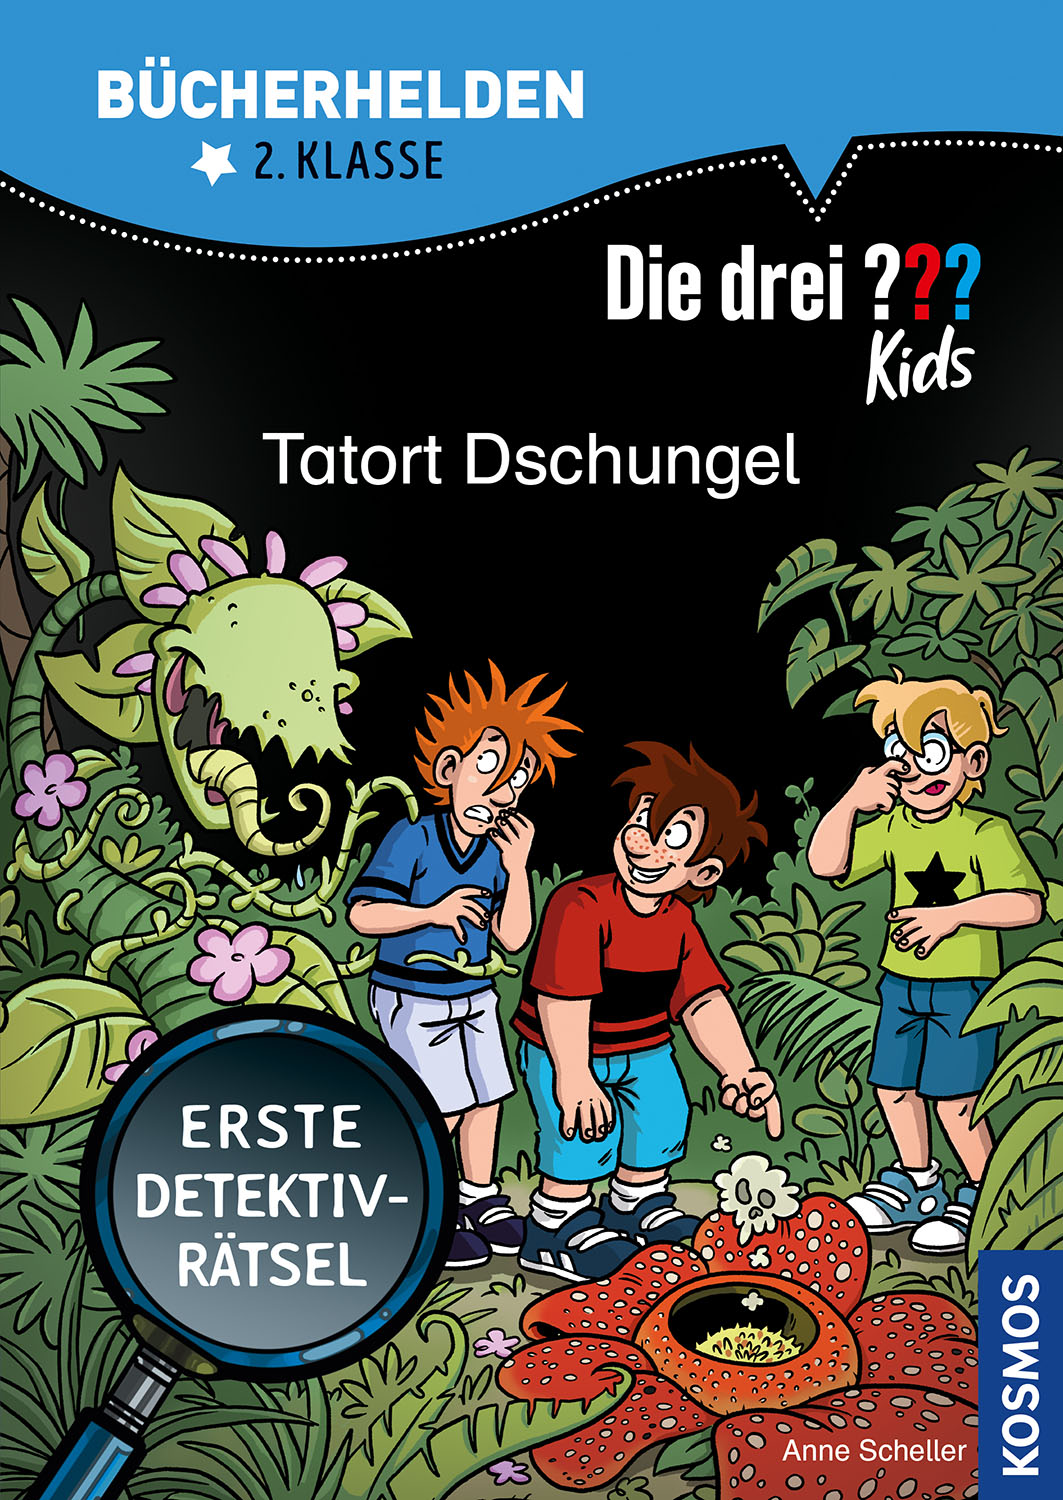 Die Drei ??? (Fragezeichen) Kids, Buch-Special: Tatort Dschungel (Bücherhelden 2.Klasse)